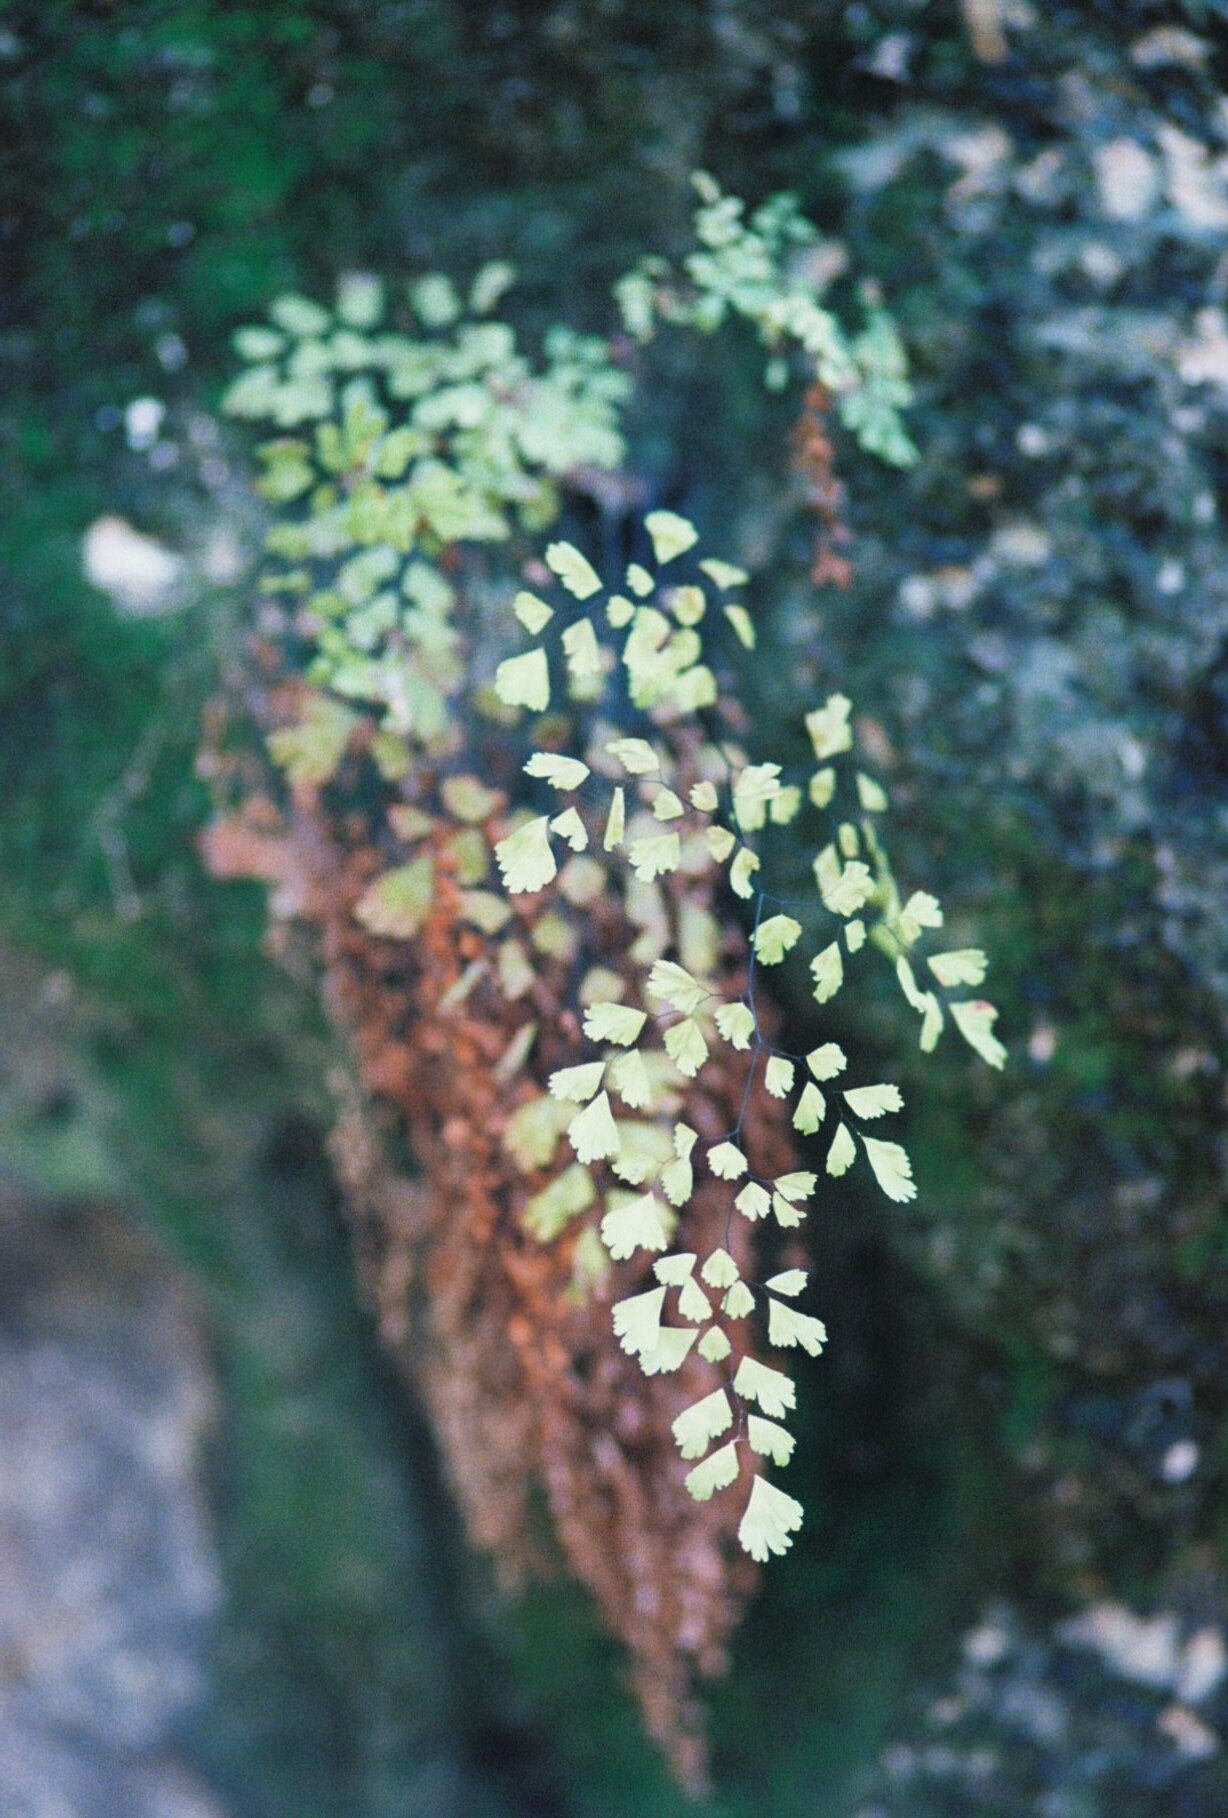   Adiantum capillus-veneris ~  Black maidenhair fern 